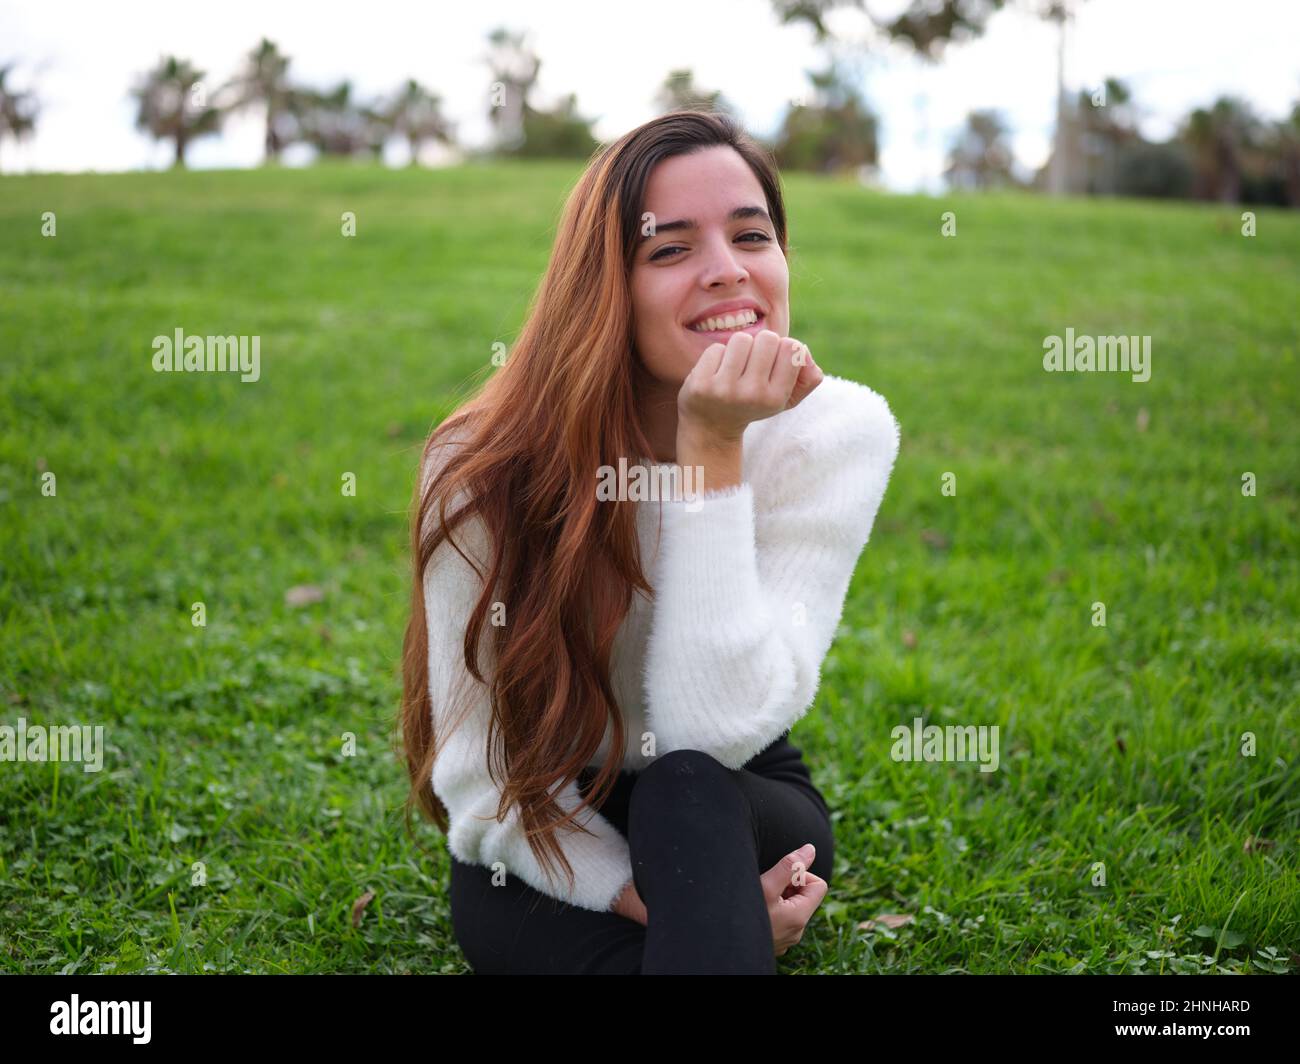 Eine verliebte junge Frau, die im Park auf dem Gras sitzt und mit der Hand auf dem Kinn die Kamera anlächelt. Stockfoto